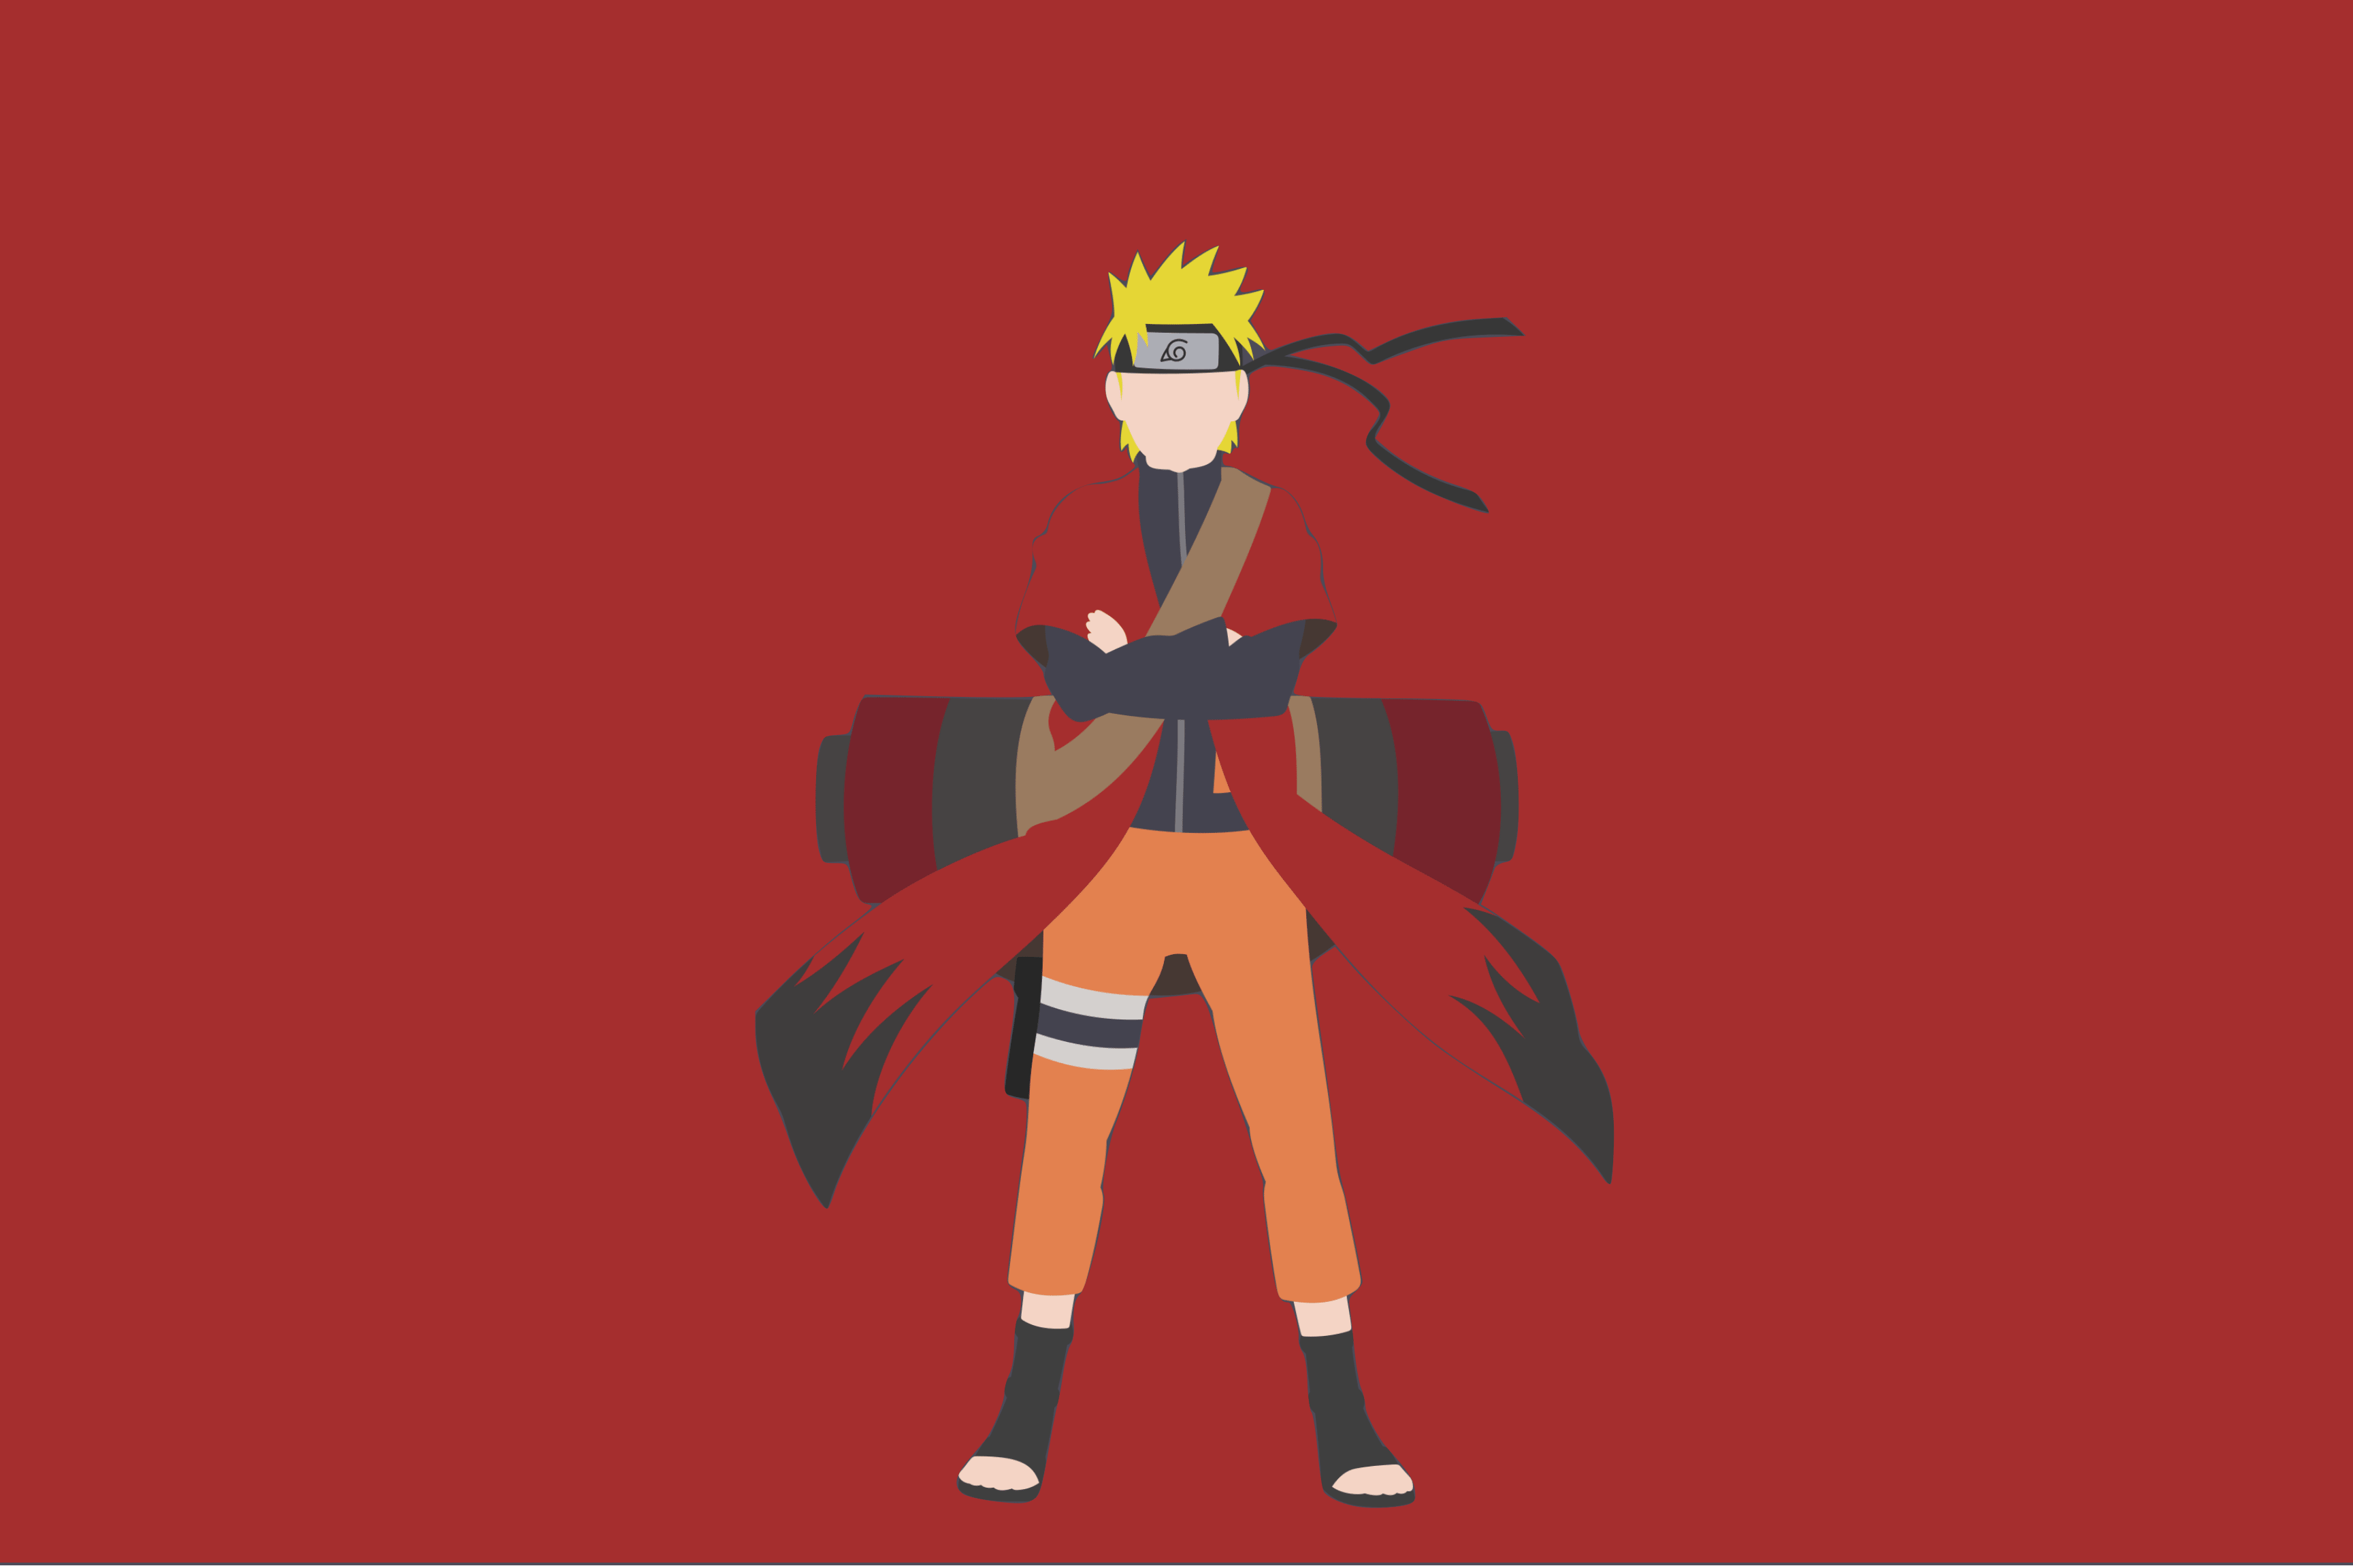 Imagen minimalista del personaje Naruto Uzumaki del anime Naruto.